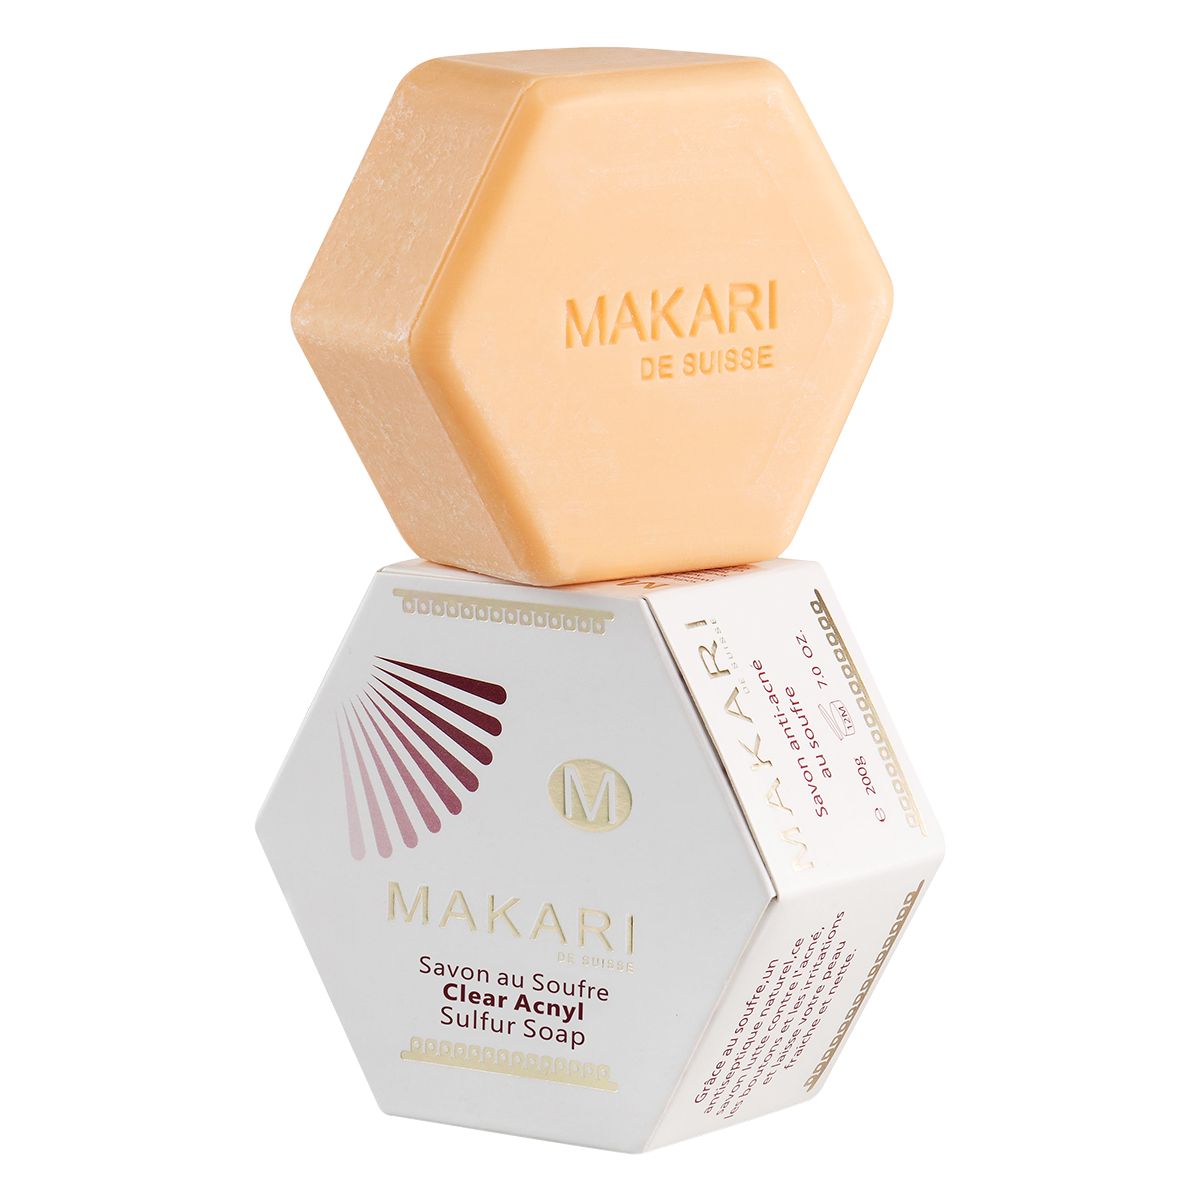 MAKARI - Clear Acnyl Sulfur Soap